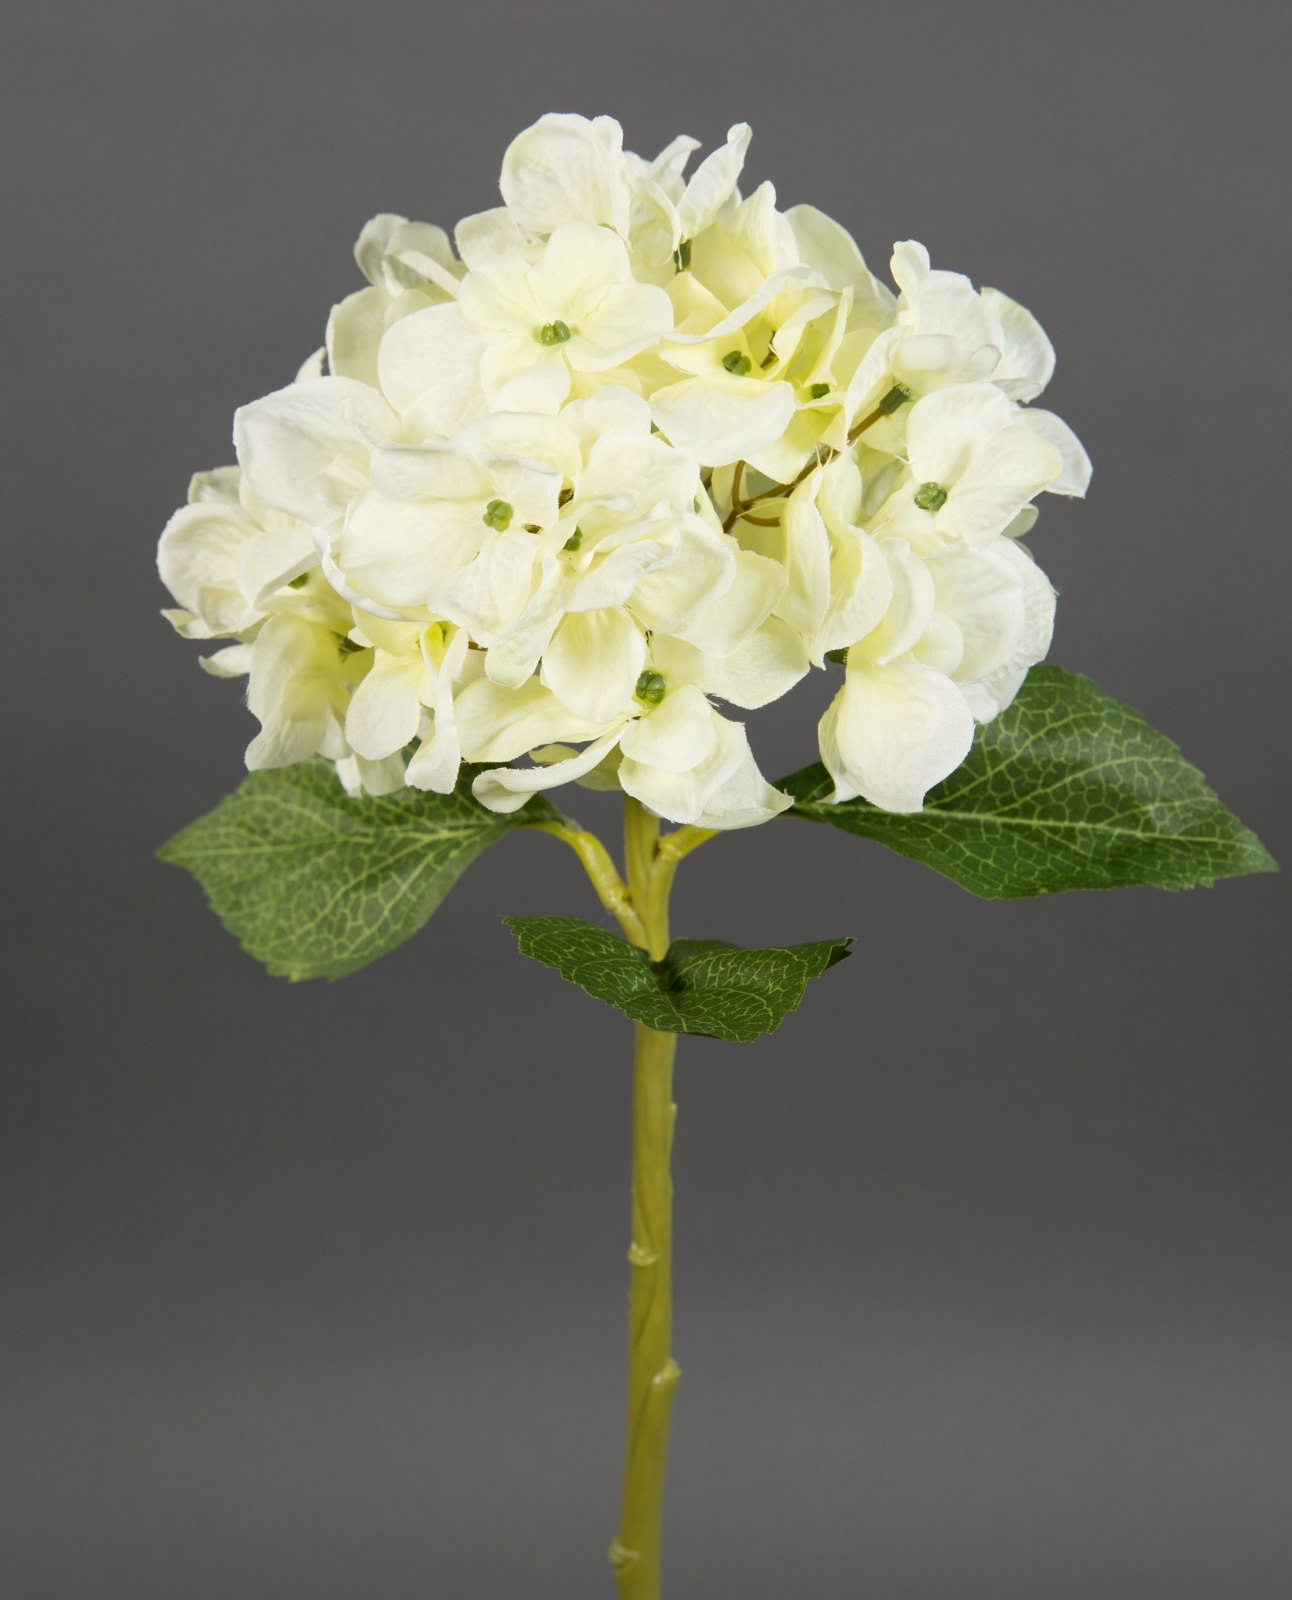 Hortensie Aqua 36cm creme-weiß FT Seidenblumen Kunstlbumen künstliche Blumen Hortensien